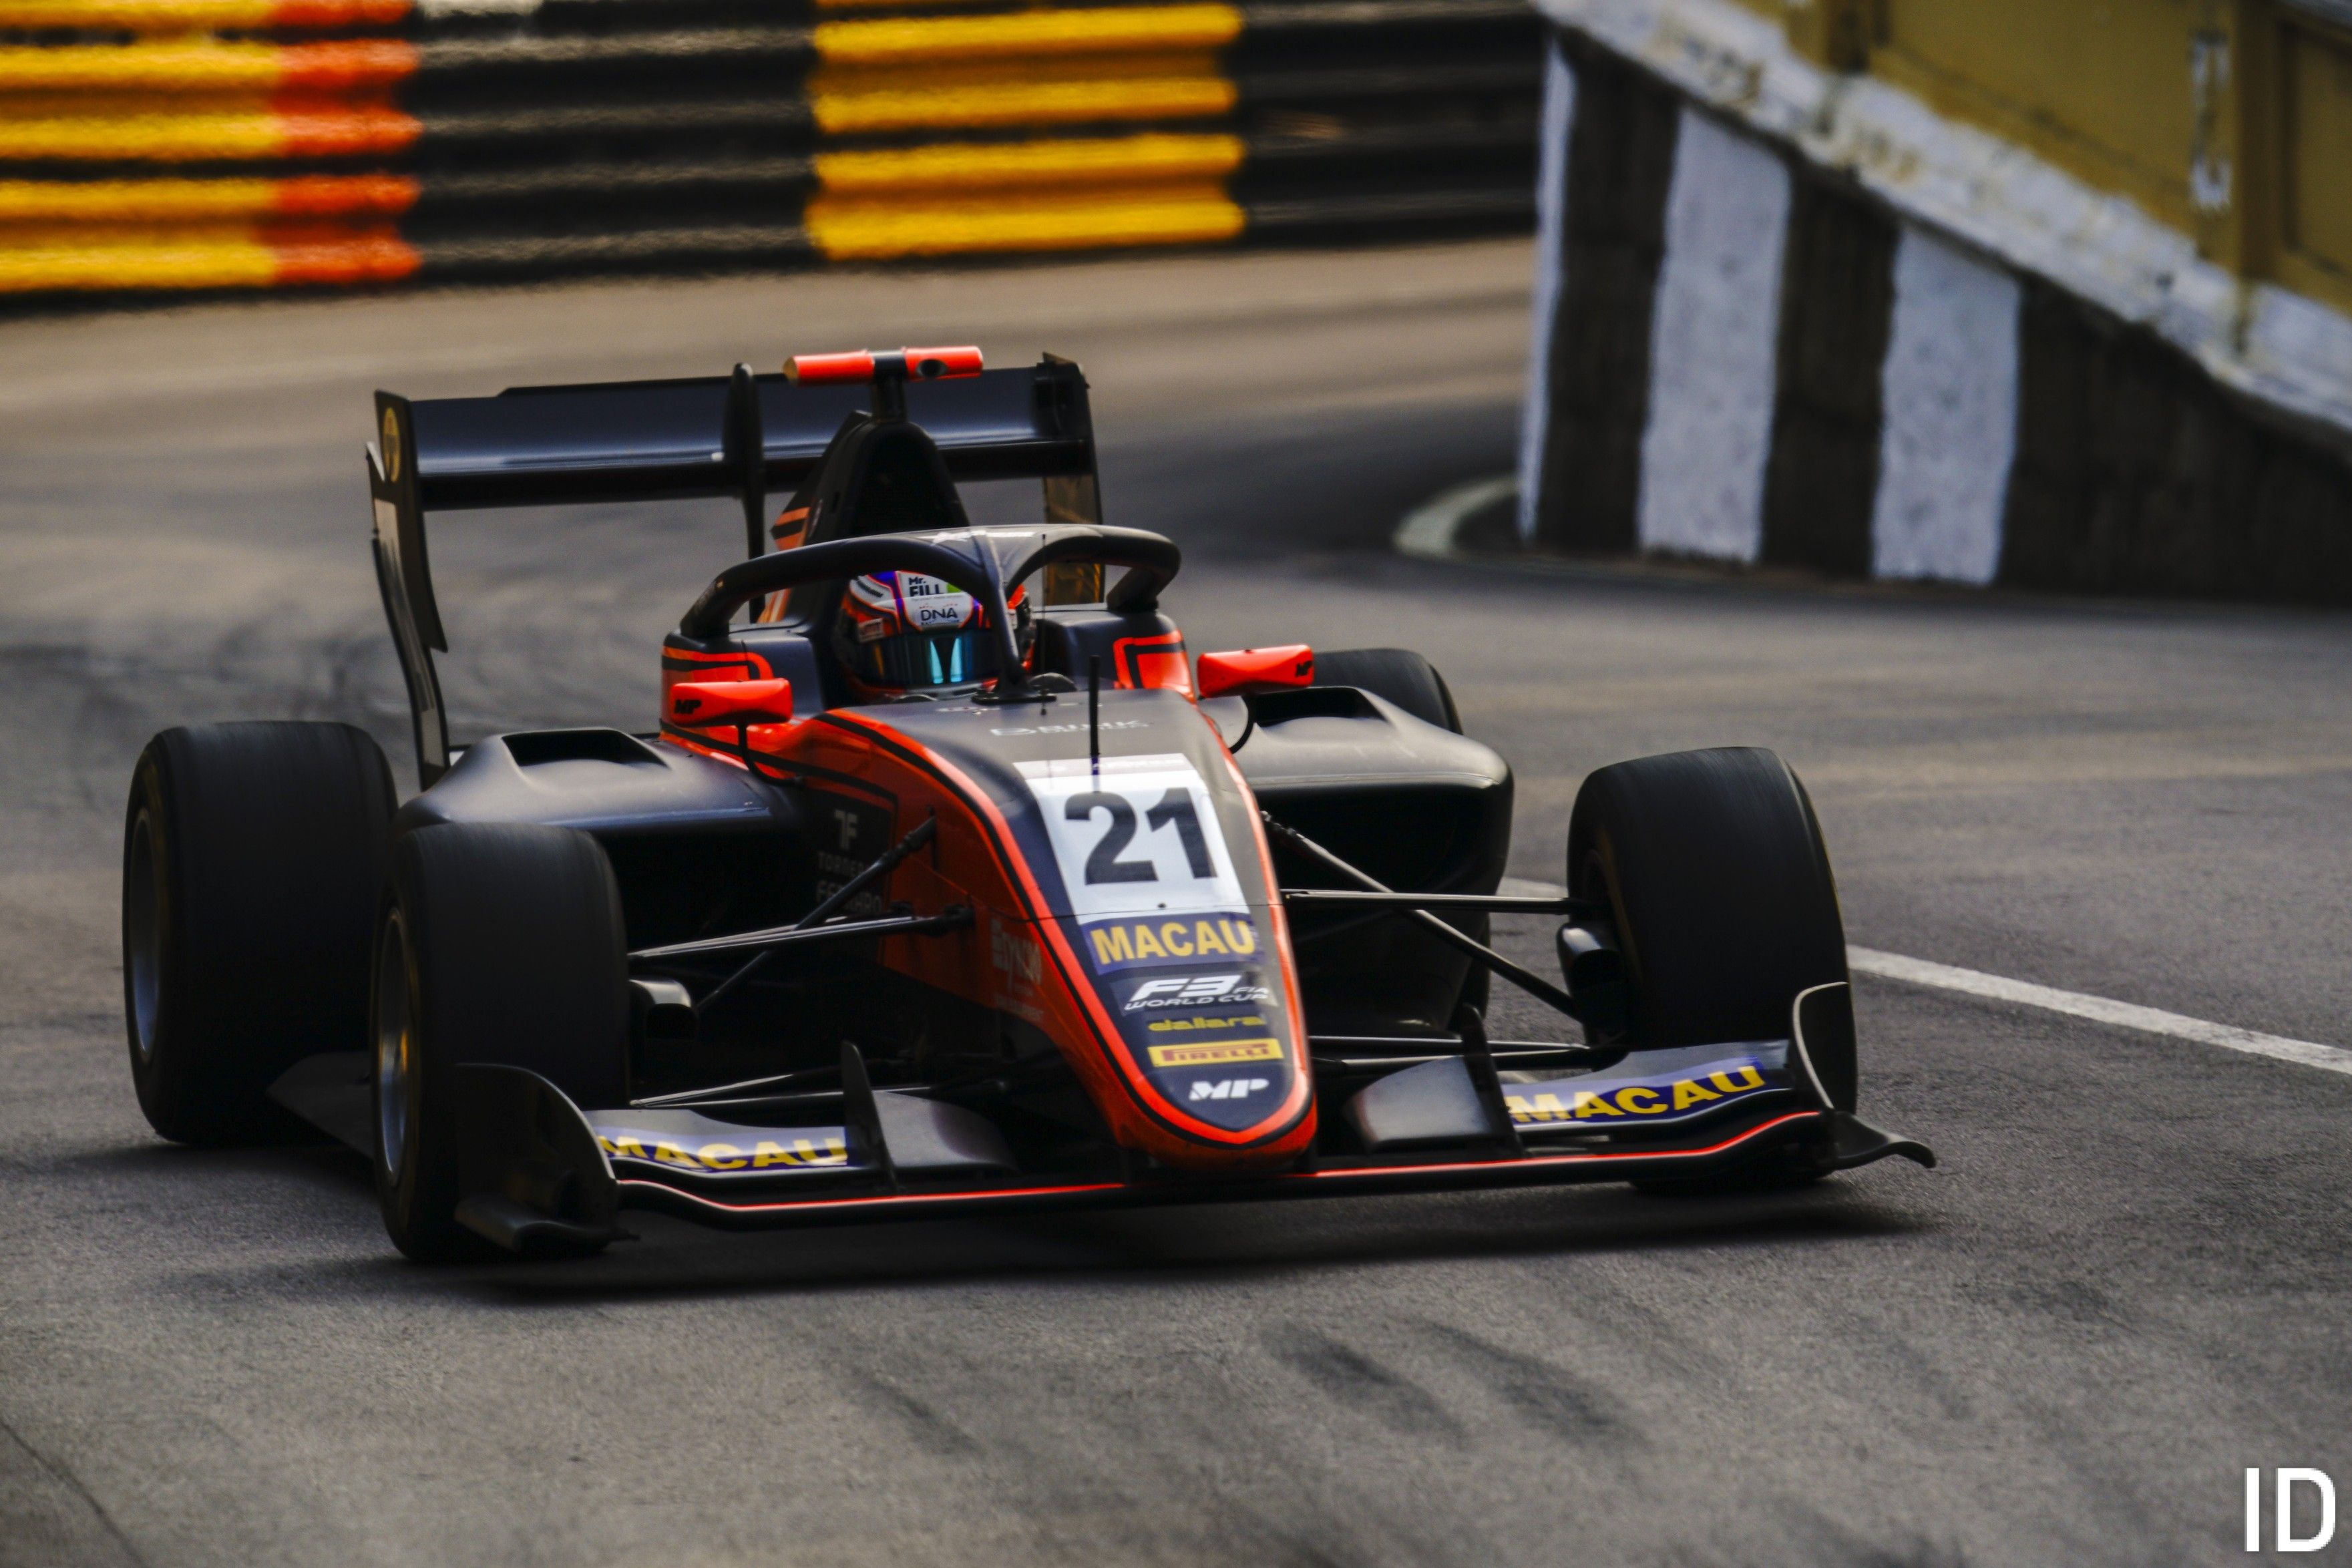 Richard Verschoor, Macau GP